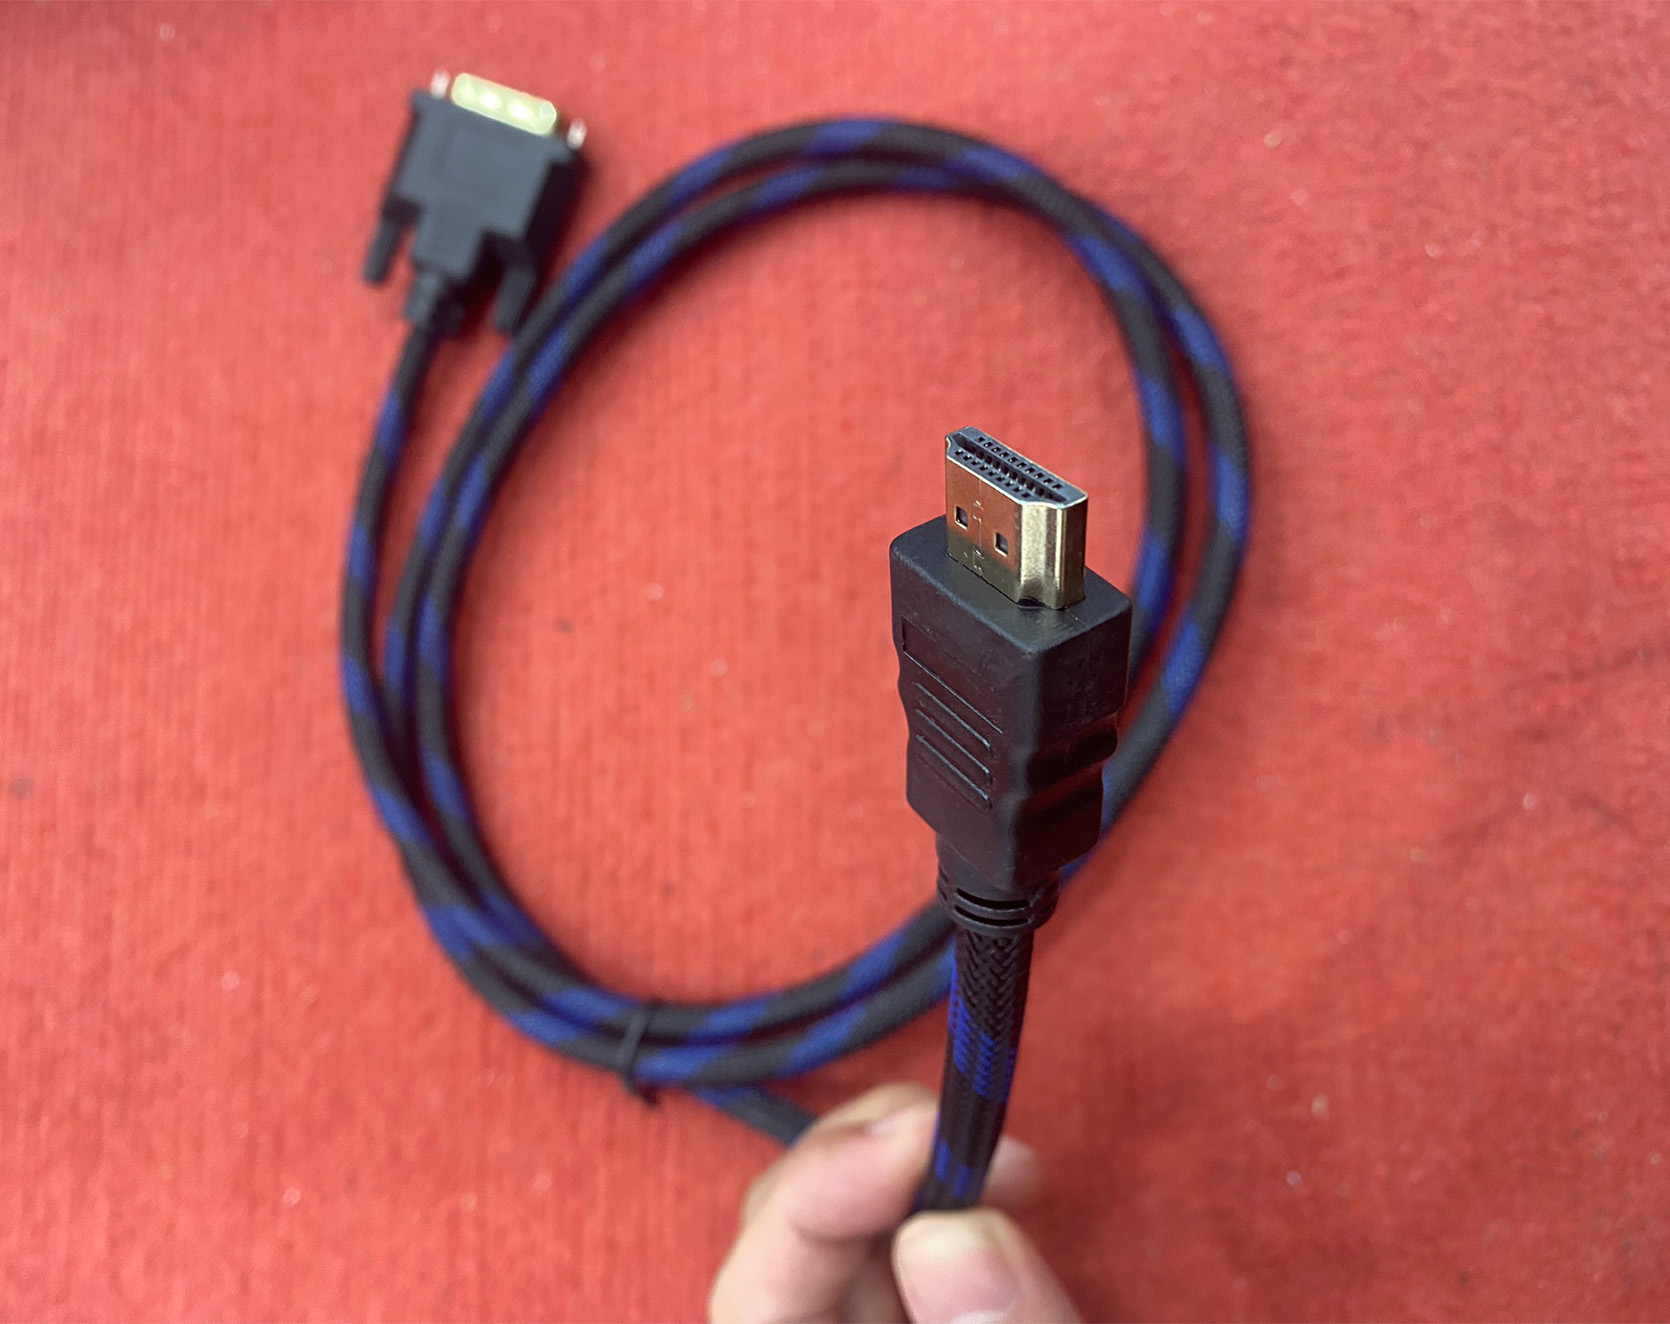 Cáp chuyển đổi HDMI To DVI 1.5m (Dây lưới)